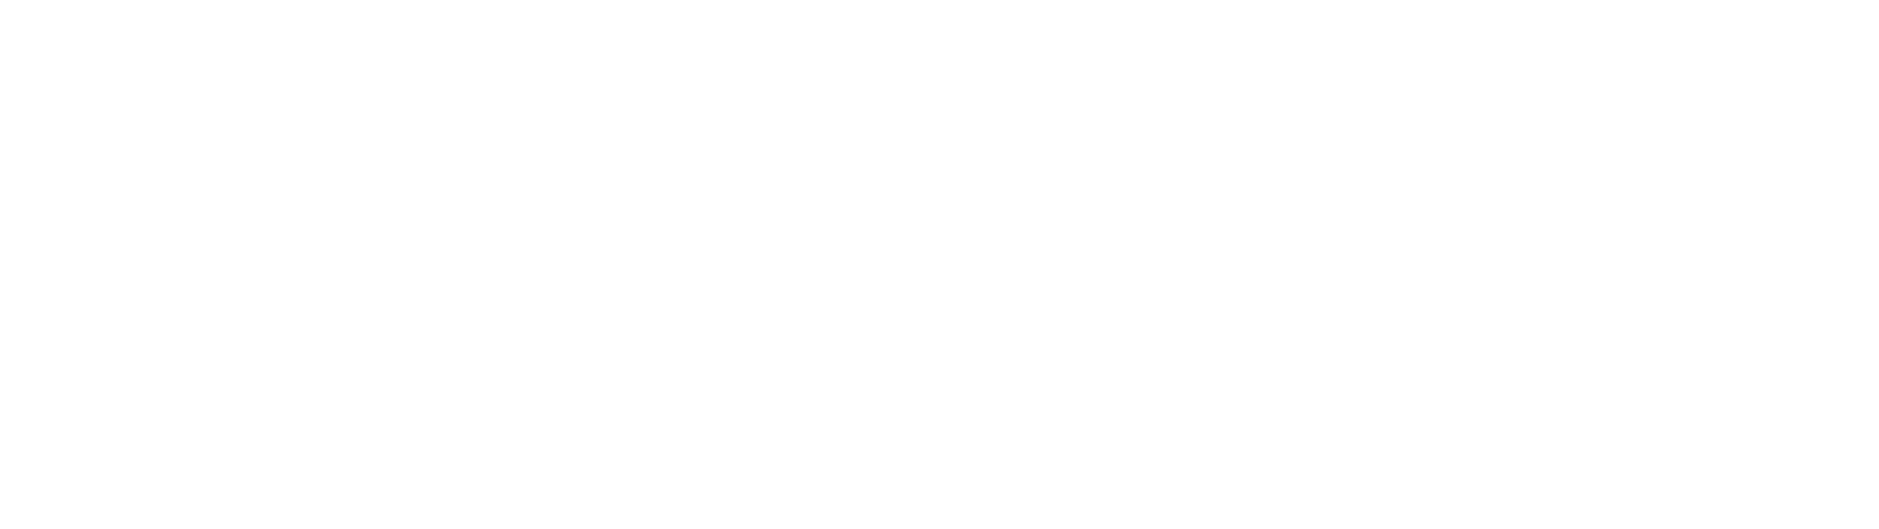 logo-intrapac-property-light copy